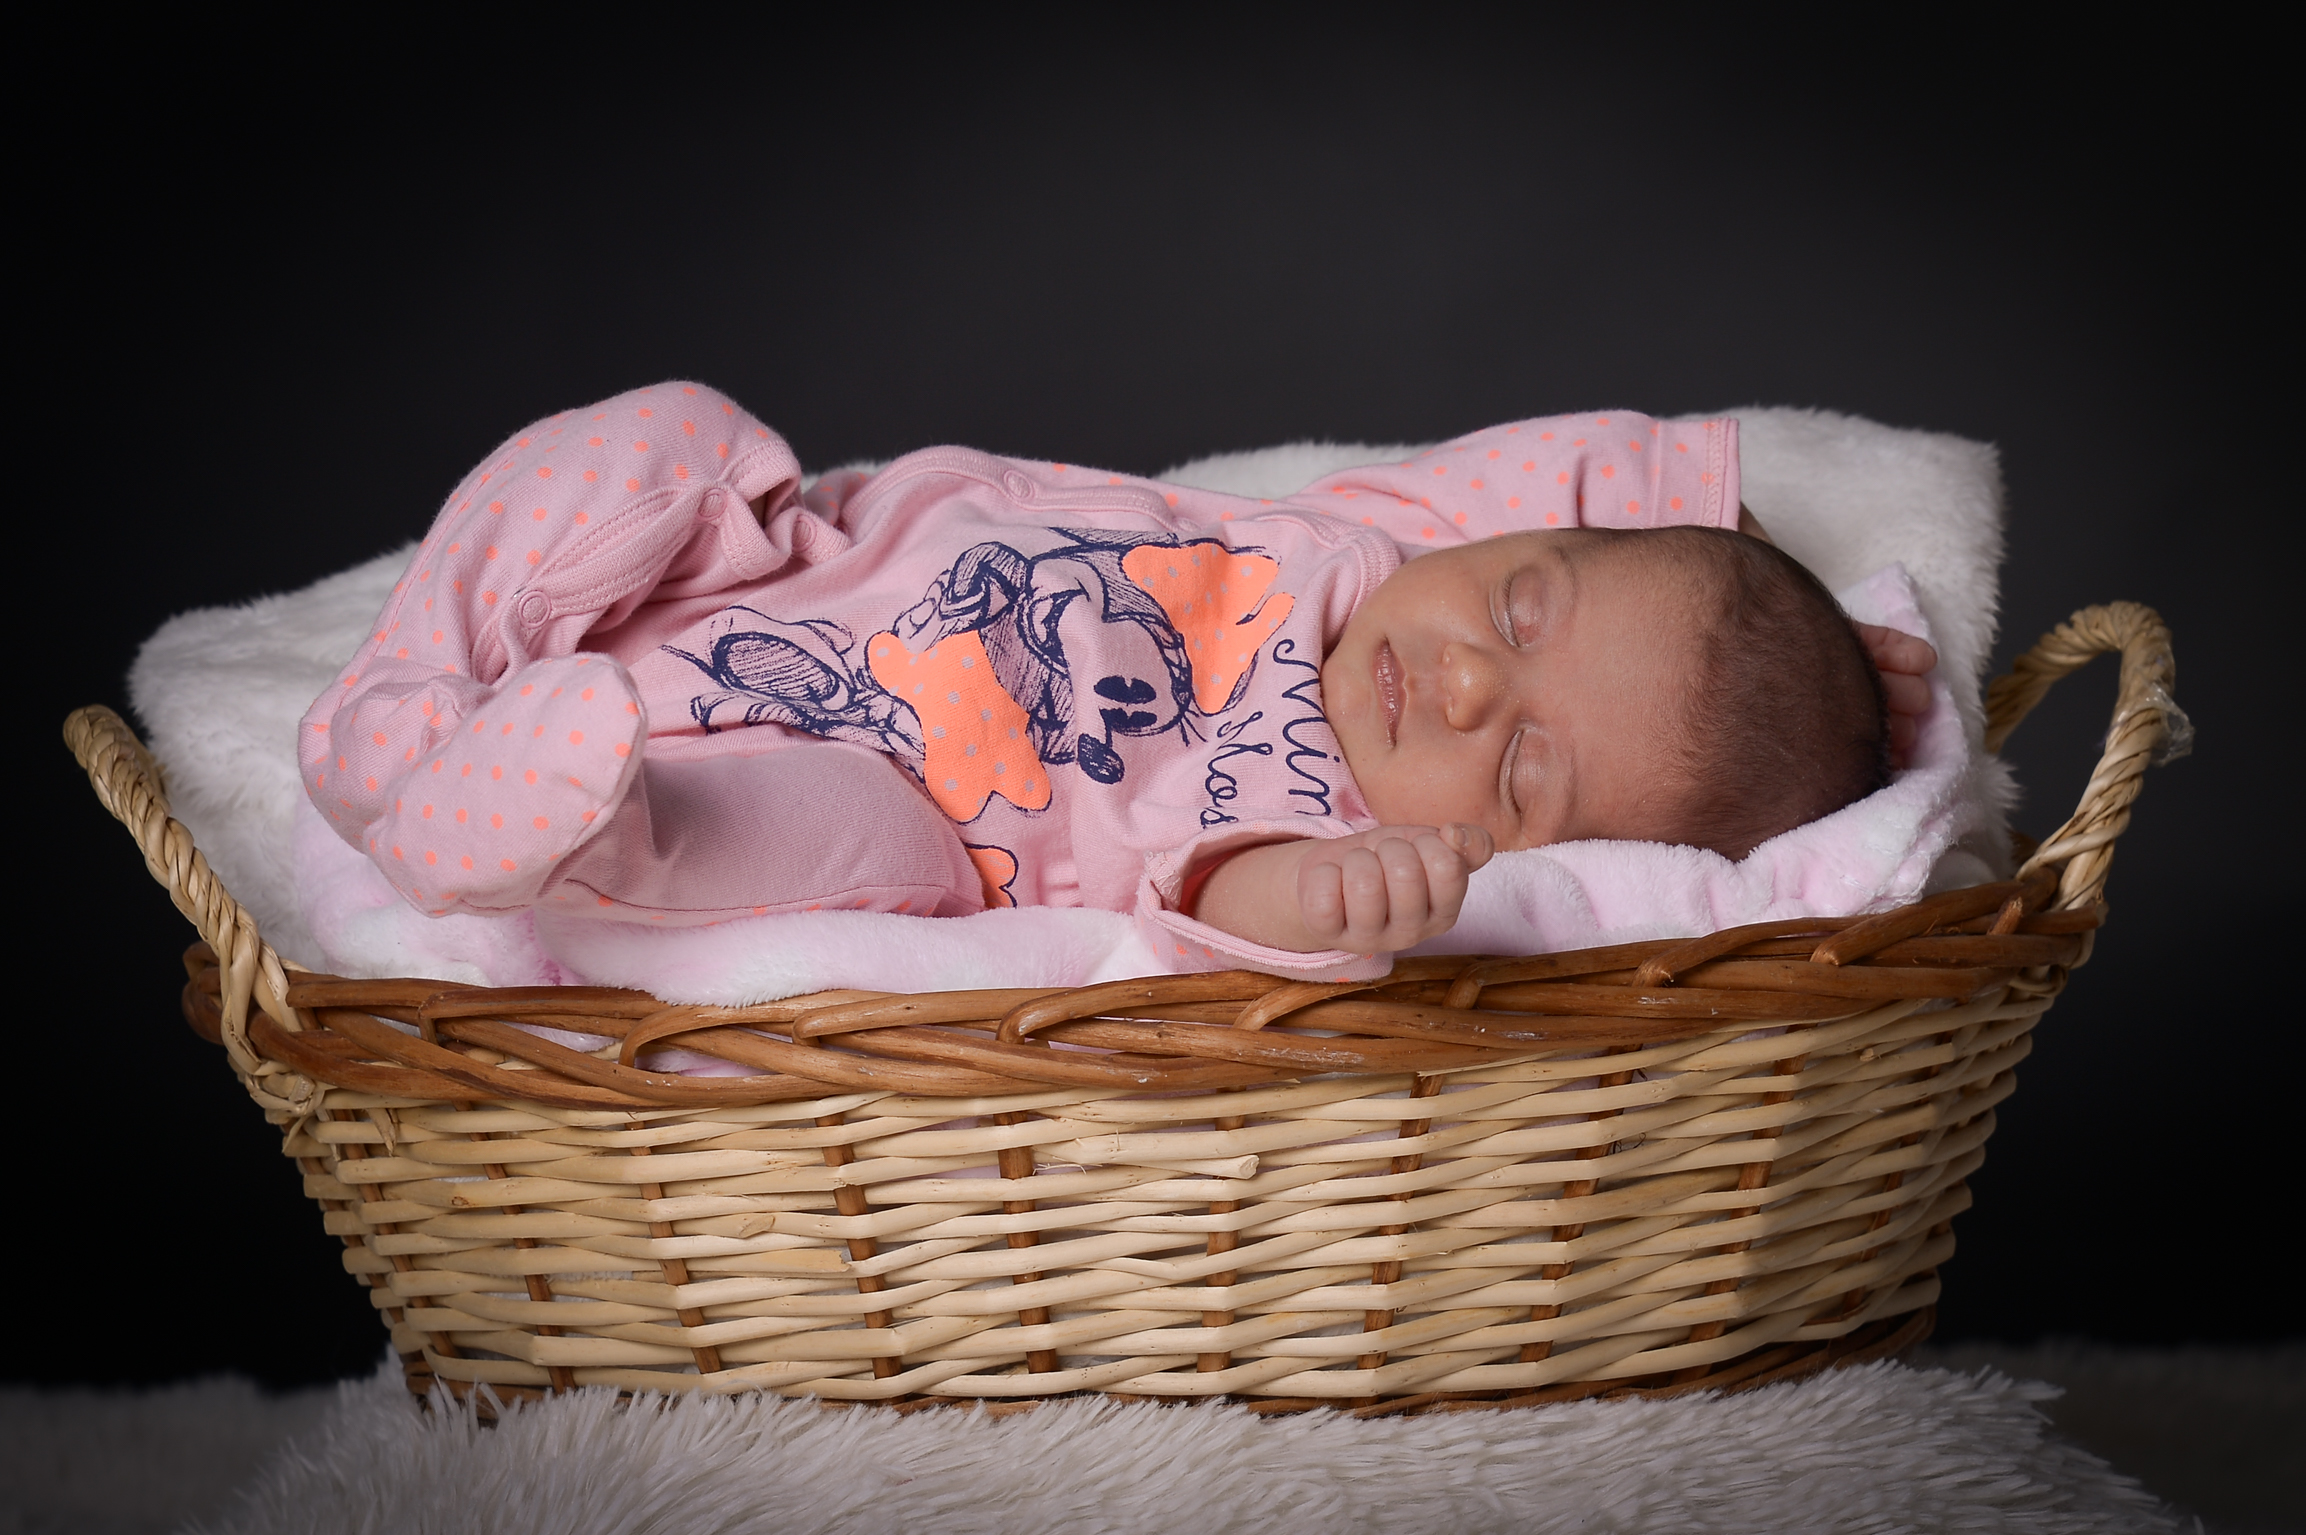 Servizio fotografico newborn